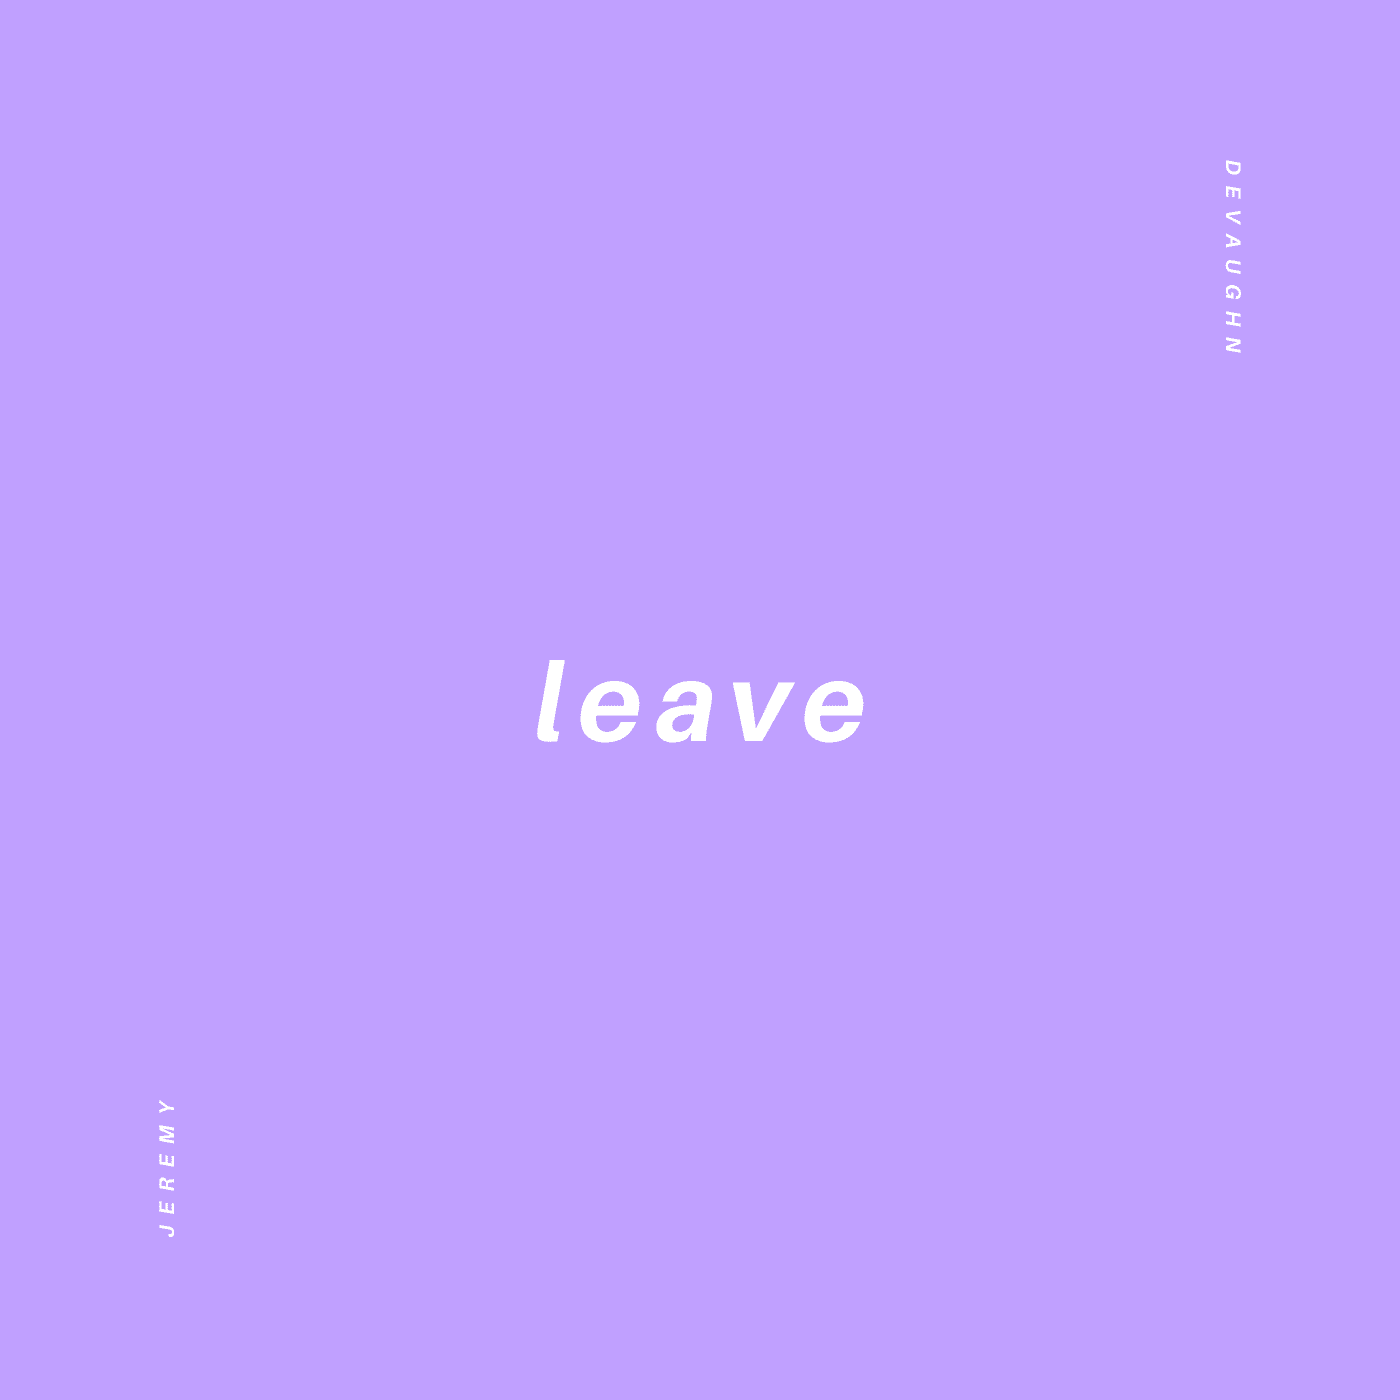 Leave by Jeremy Devaughn